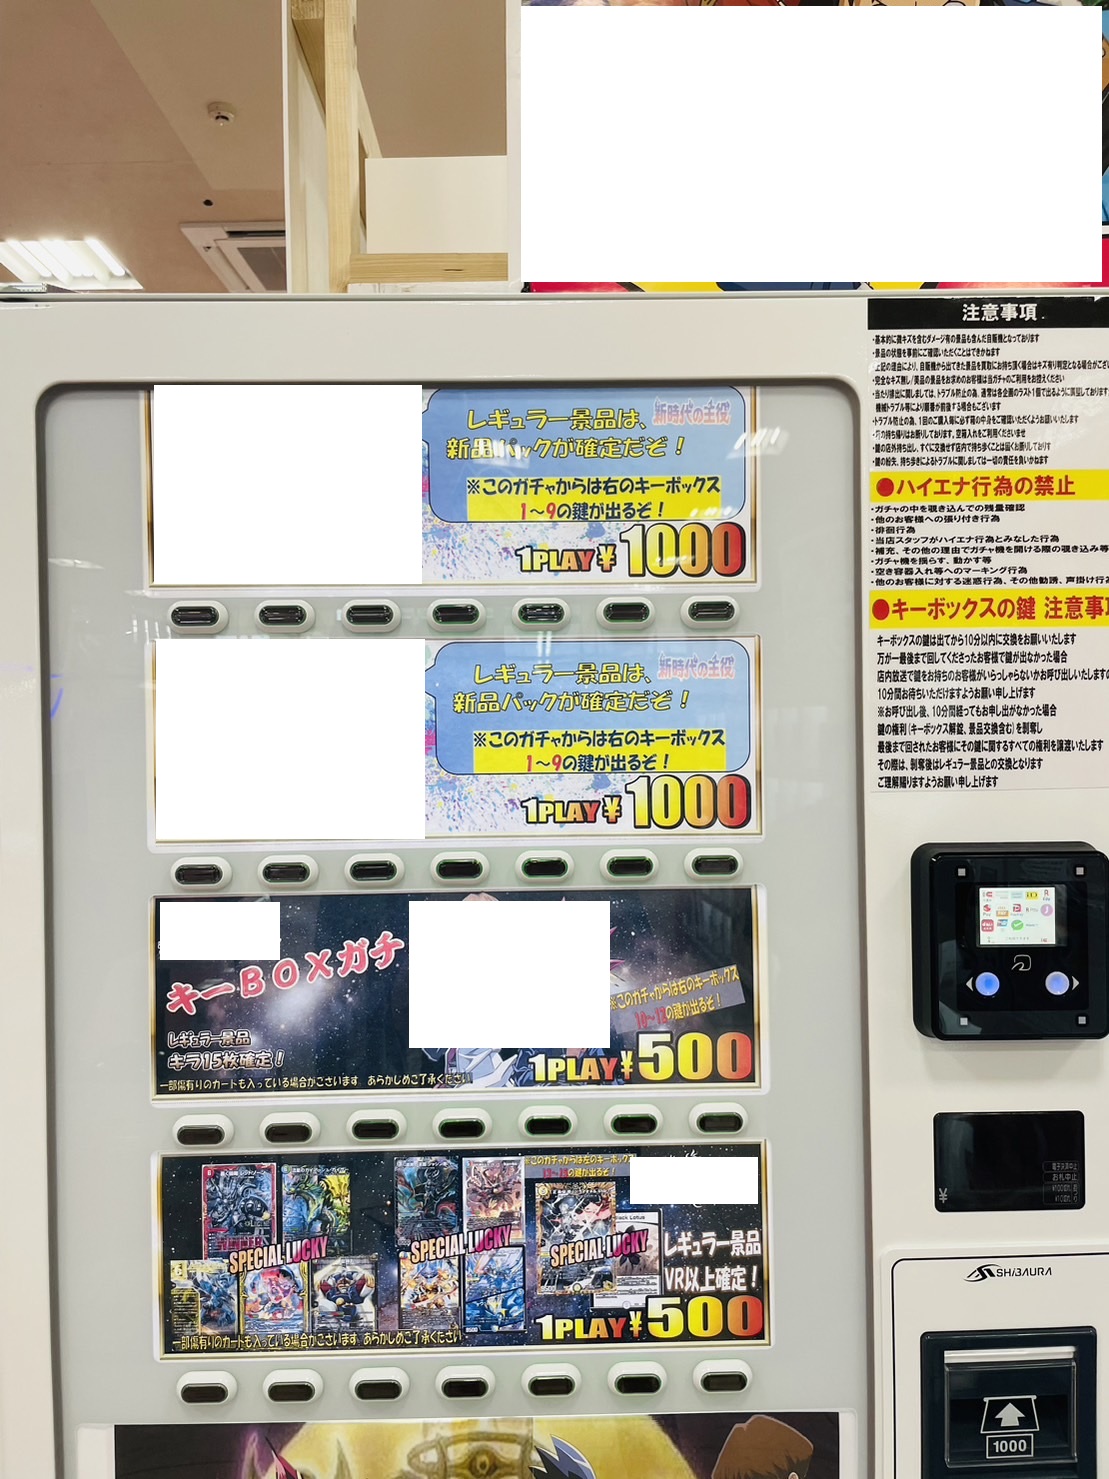 □『ワンピースカードゲーム 新時代の主役パック確定 ¥1,000キー ...